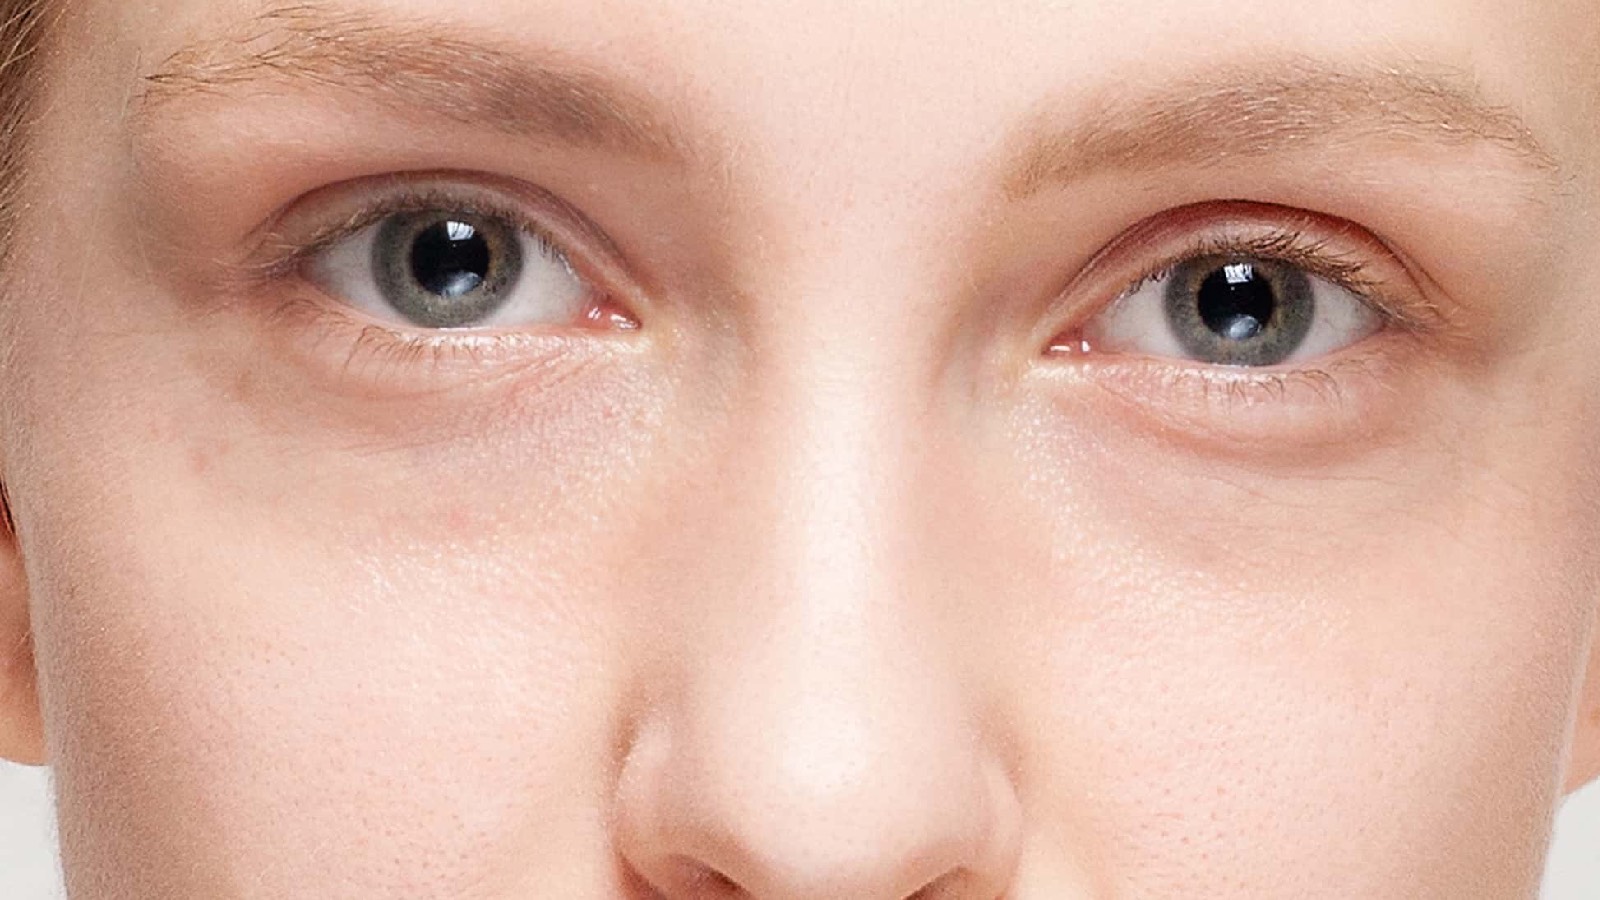 Göz altı halkaları neden oluşur? İşte en yaygın 7 nedeni